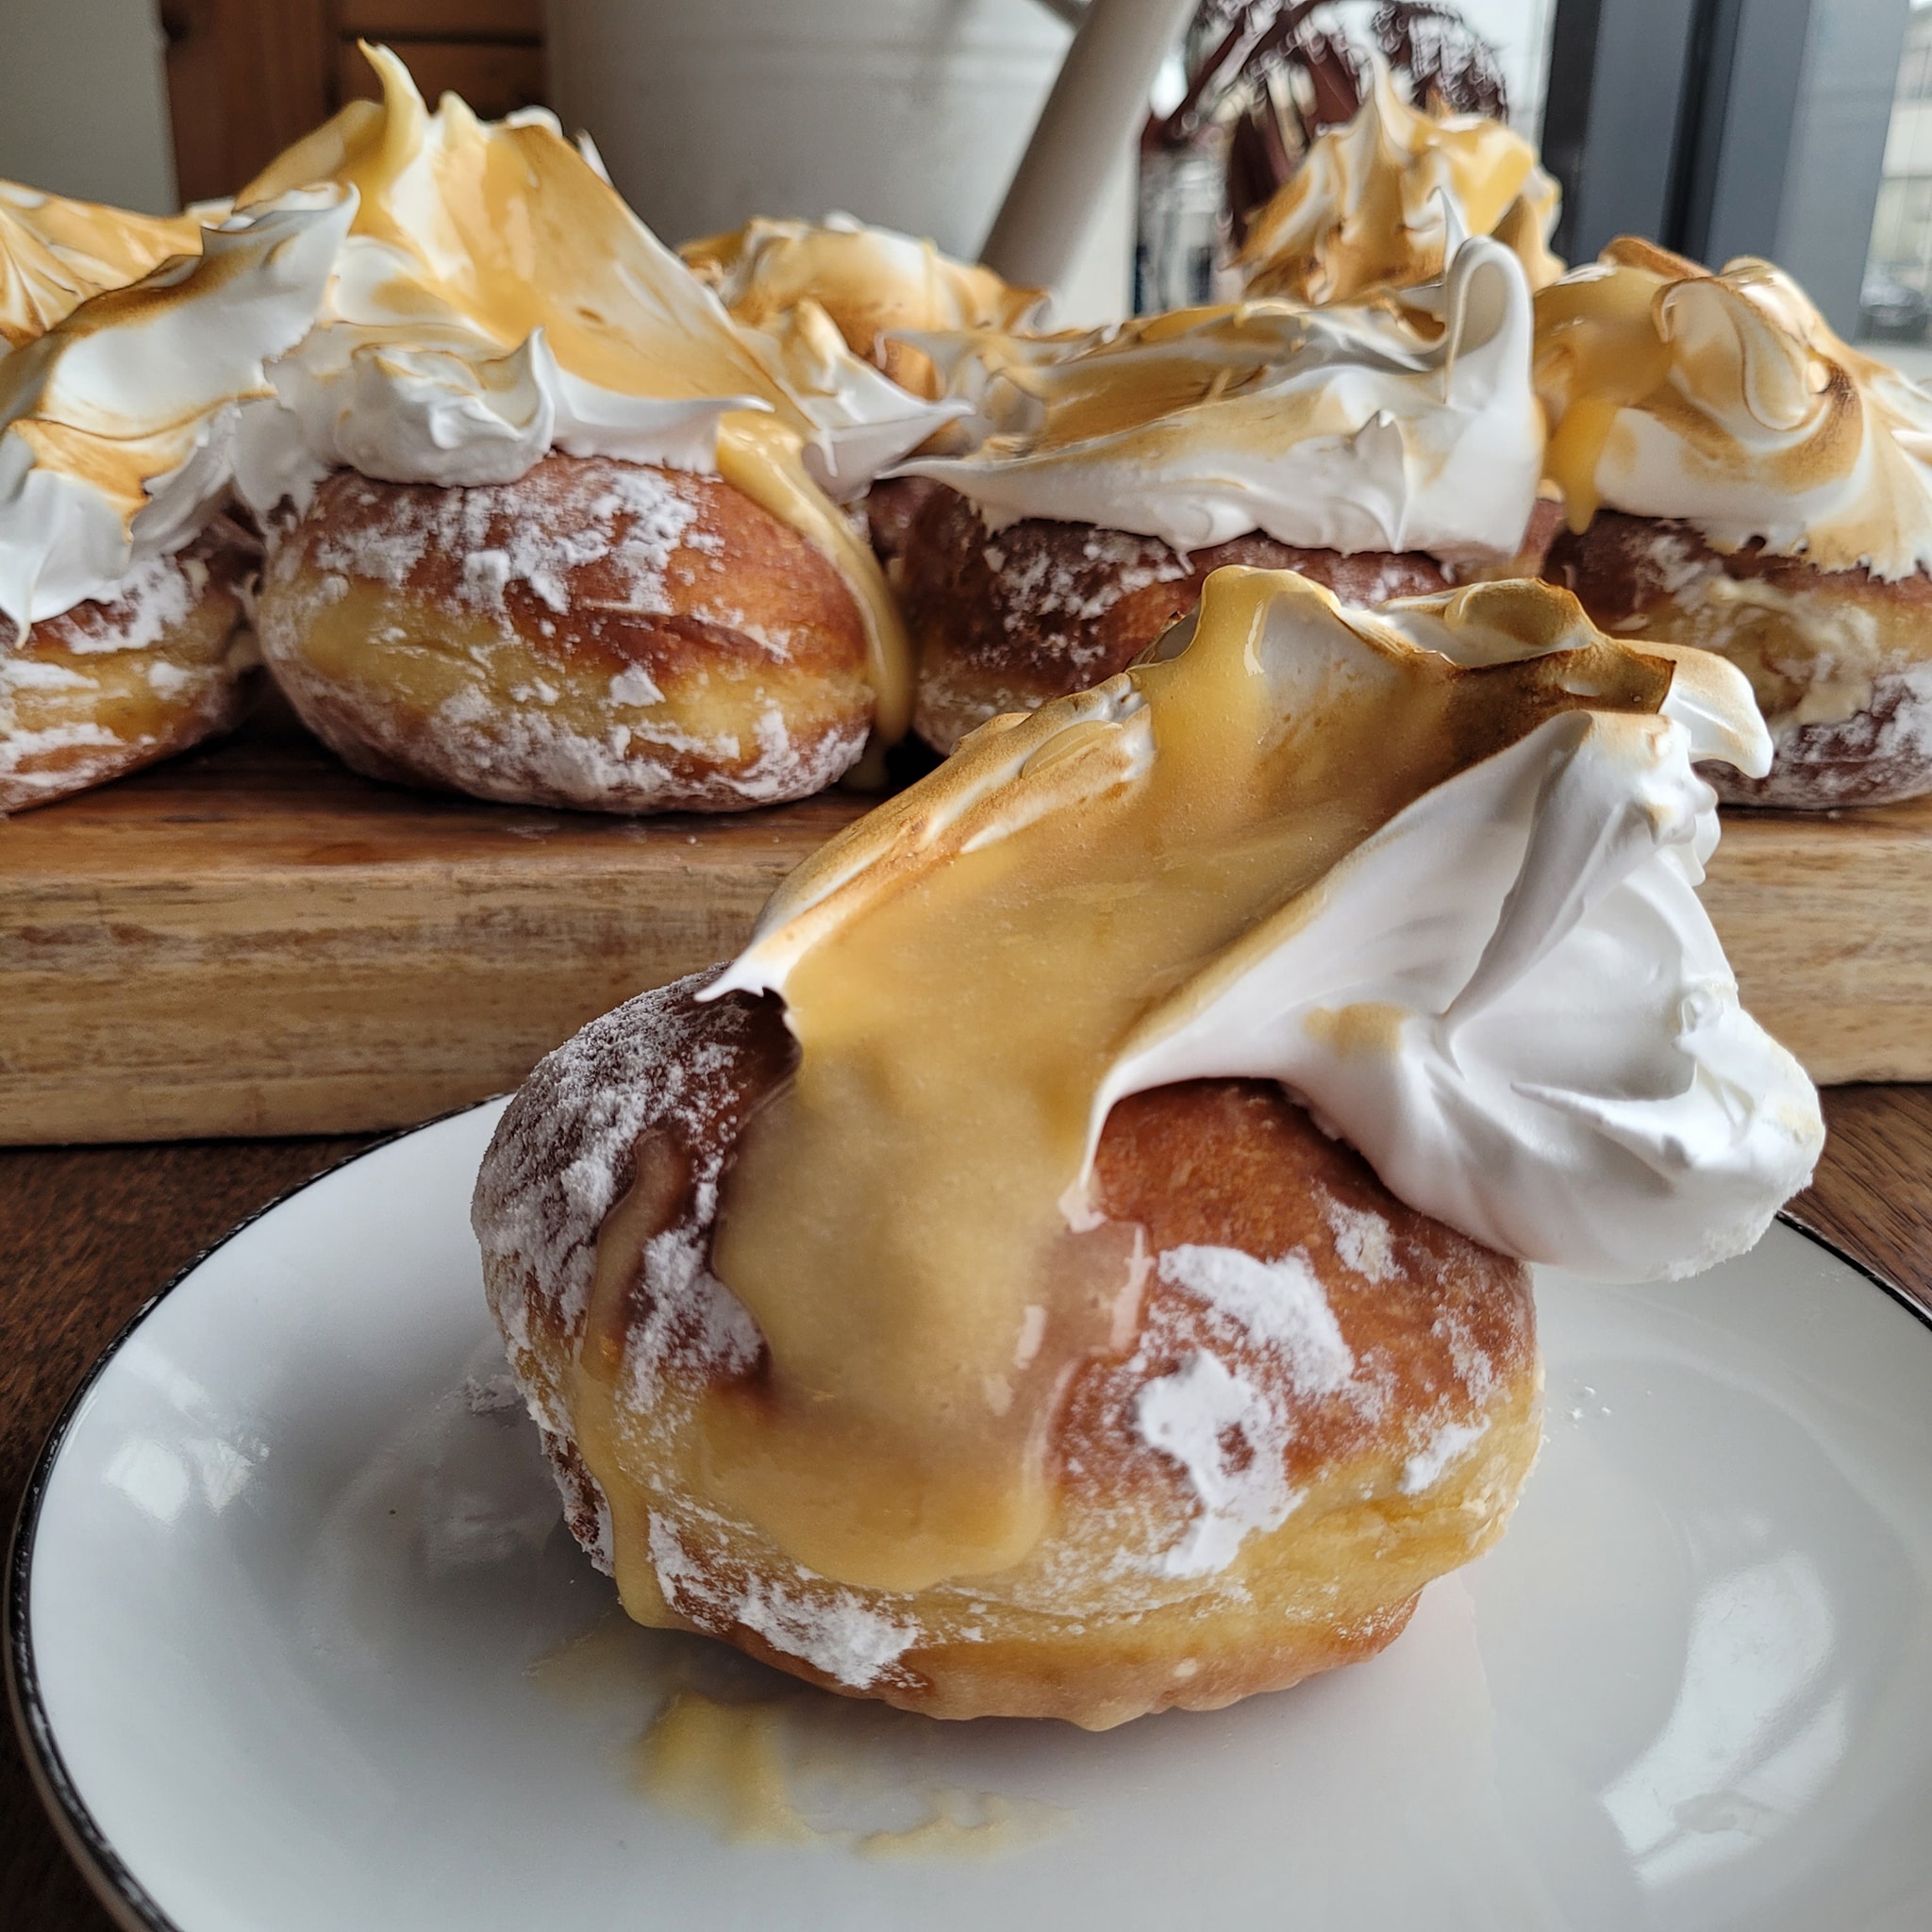 26th Of May – Lemon Meringue Donuts Box Of 6